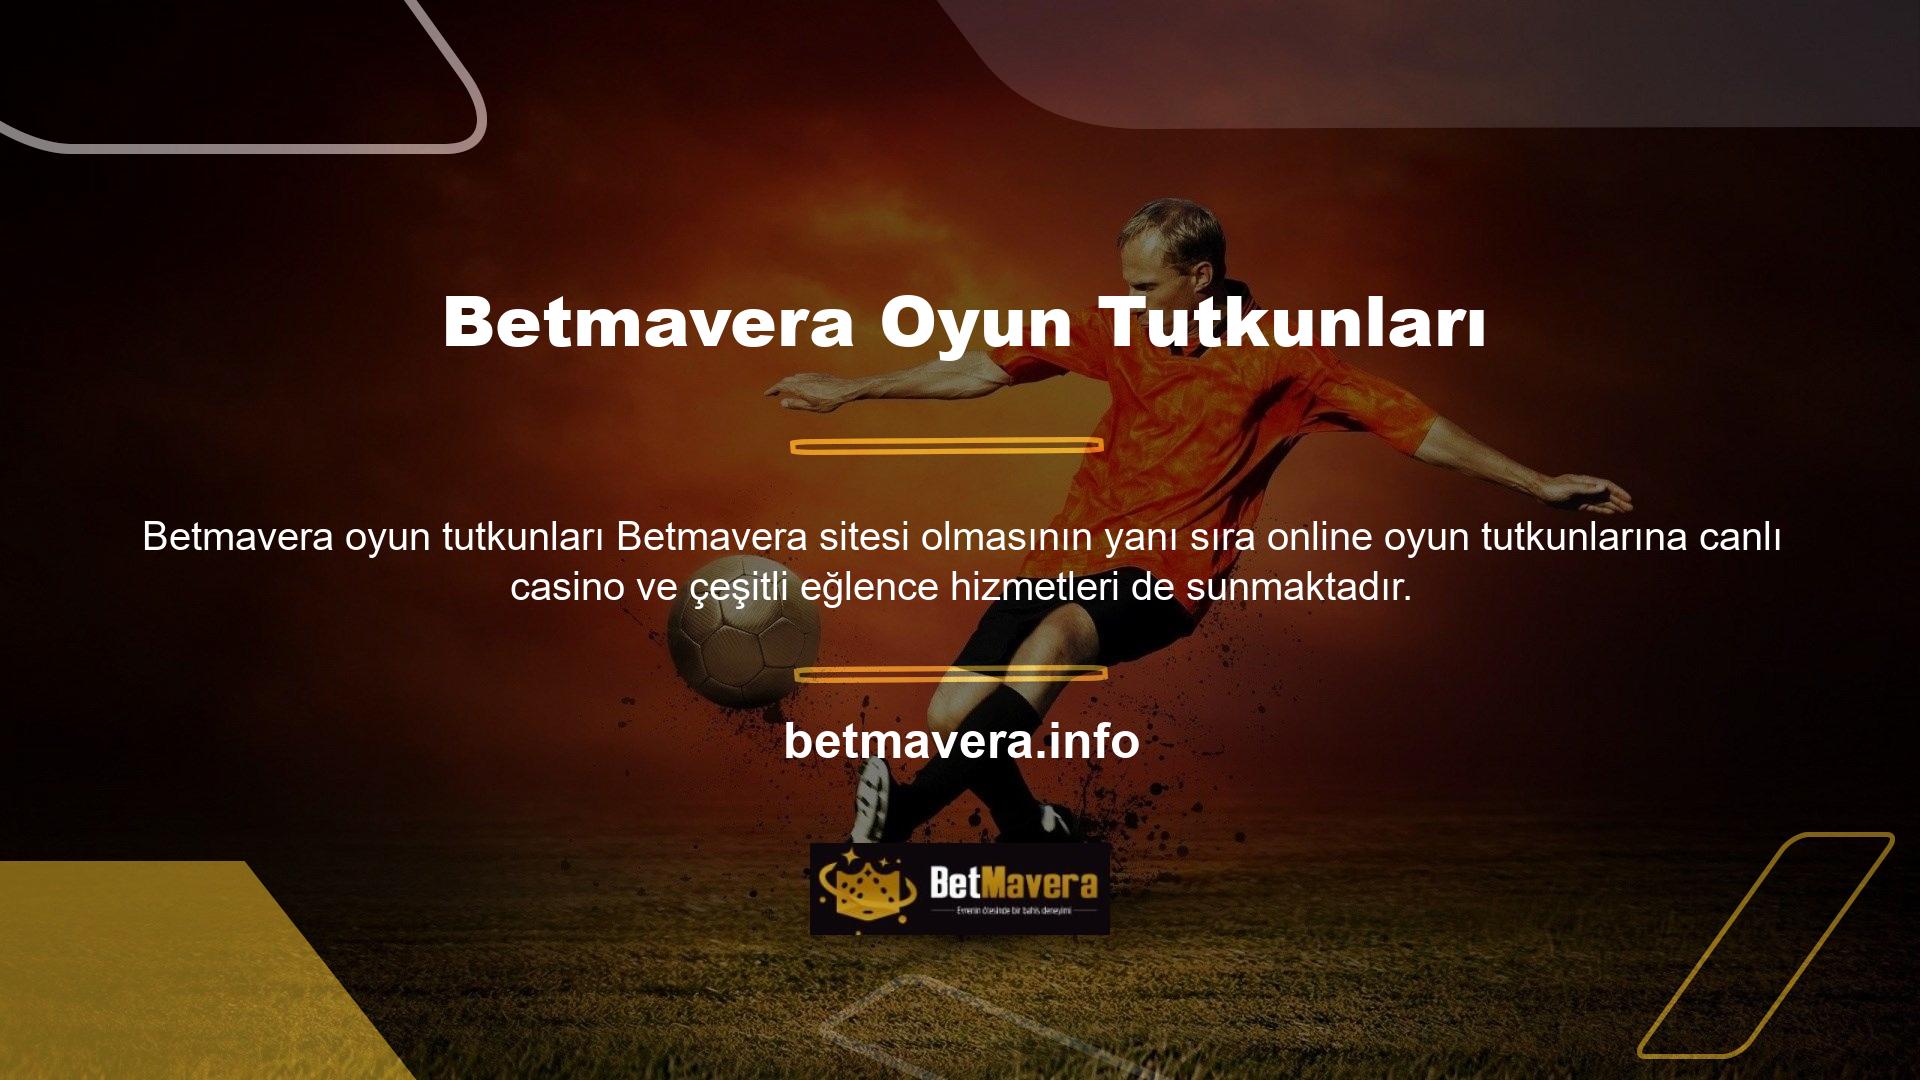 Betmavera web sitesinde tüm spor dallarından ve liglerden maçlara bahis oynayabilir, ayrıca Betmavera canlı bahis maçlarının keyfini çıkarabilirsiniz